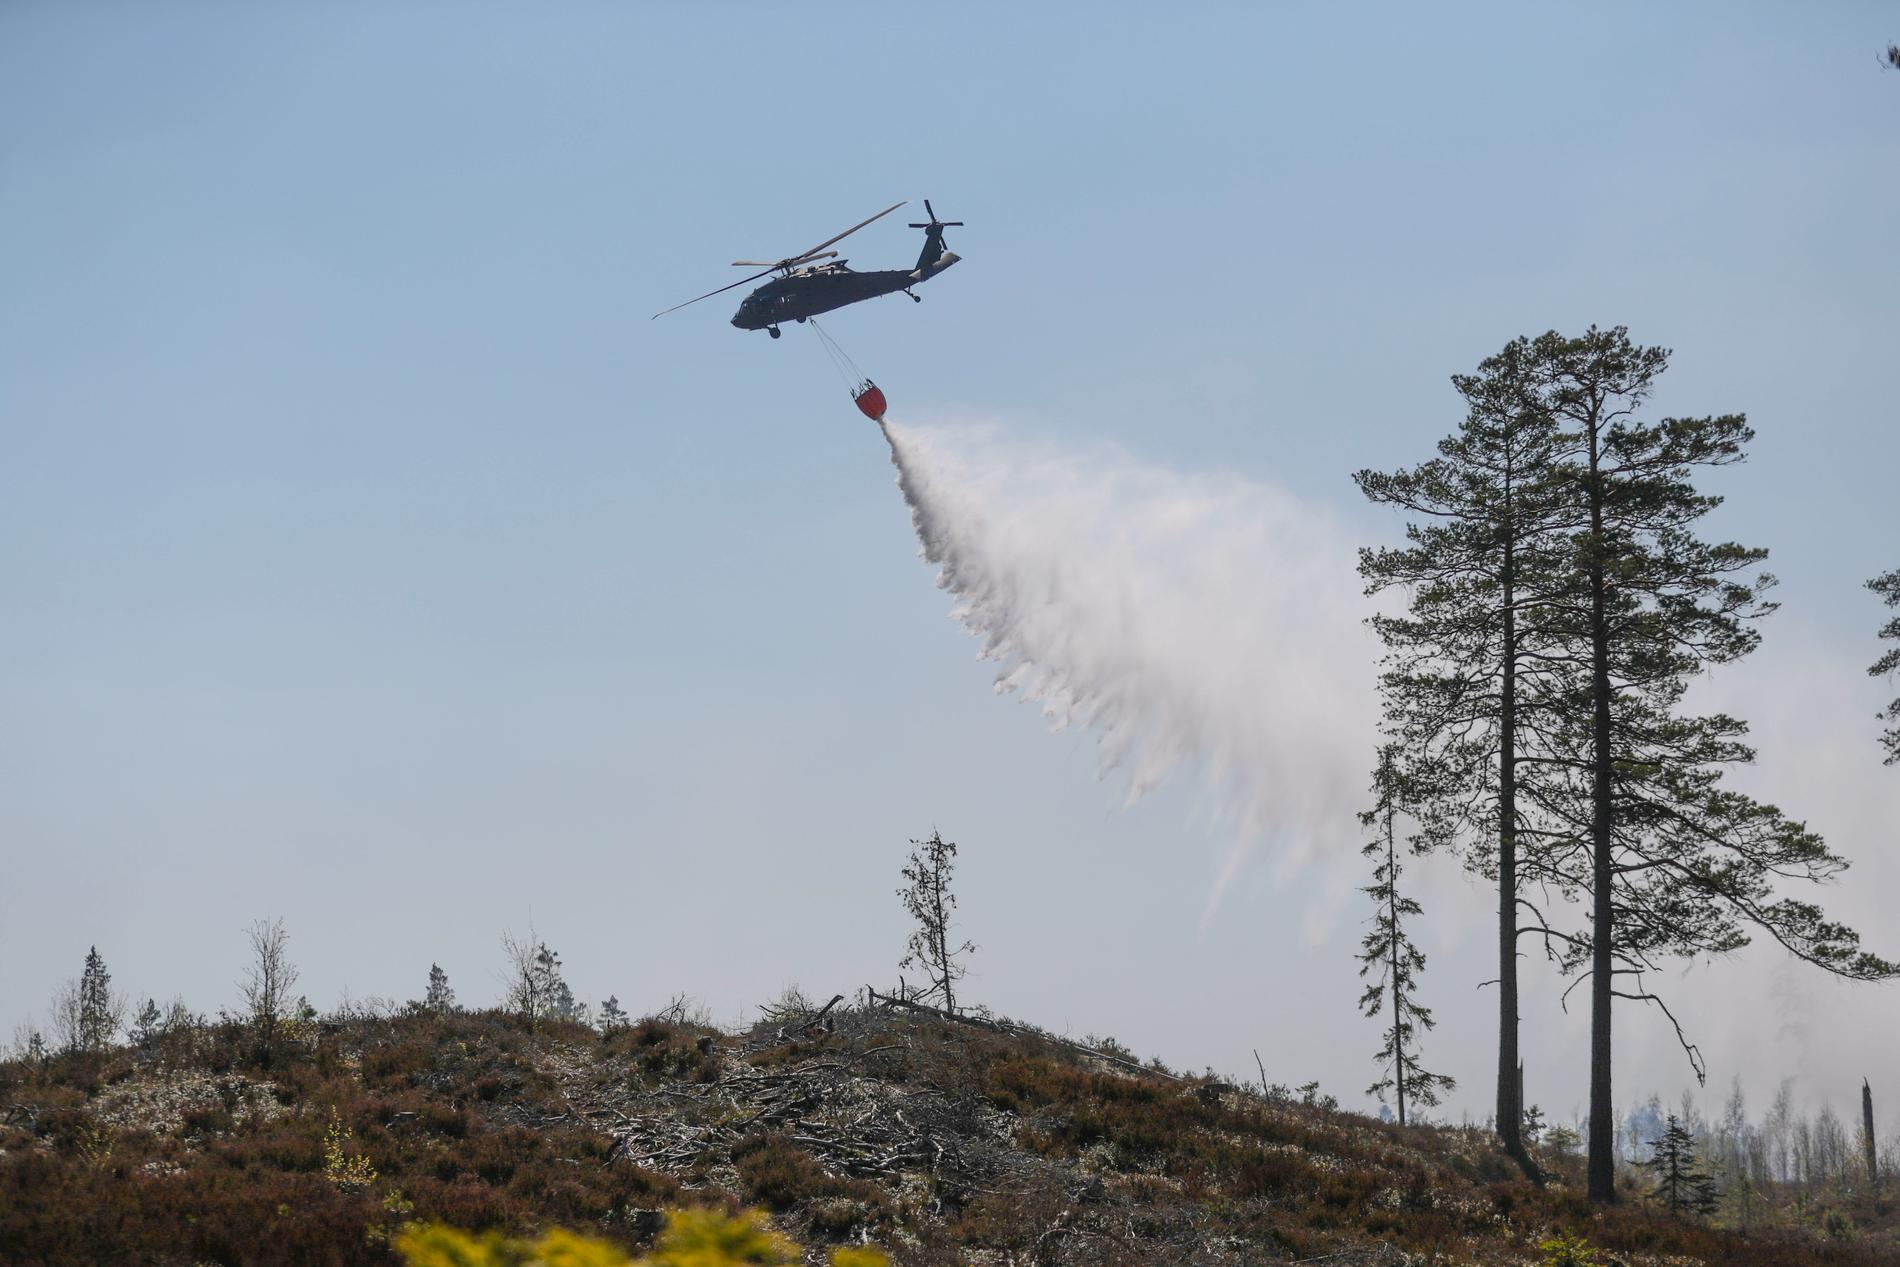 Försvarets helikopter hämtar vatten i en sjö för att vattenbomba en skogsbrand norr om Tjällmo, norr om Motala i Östergötland under tisdagen.